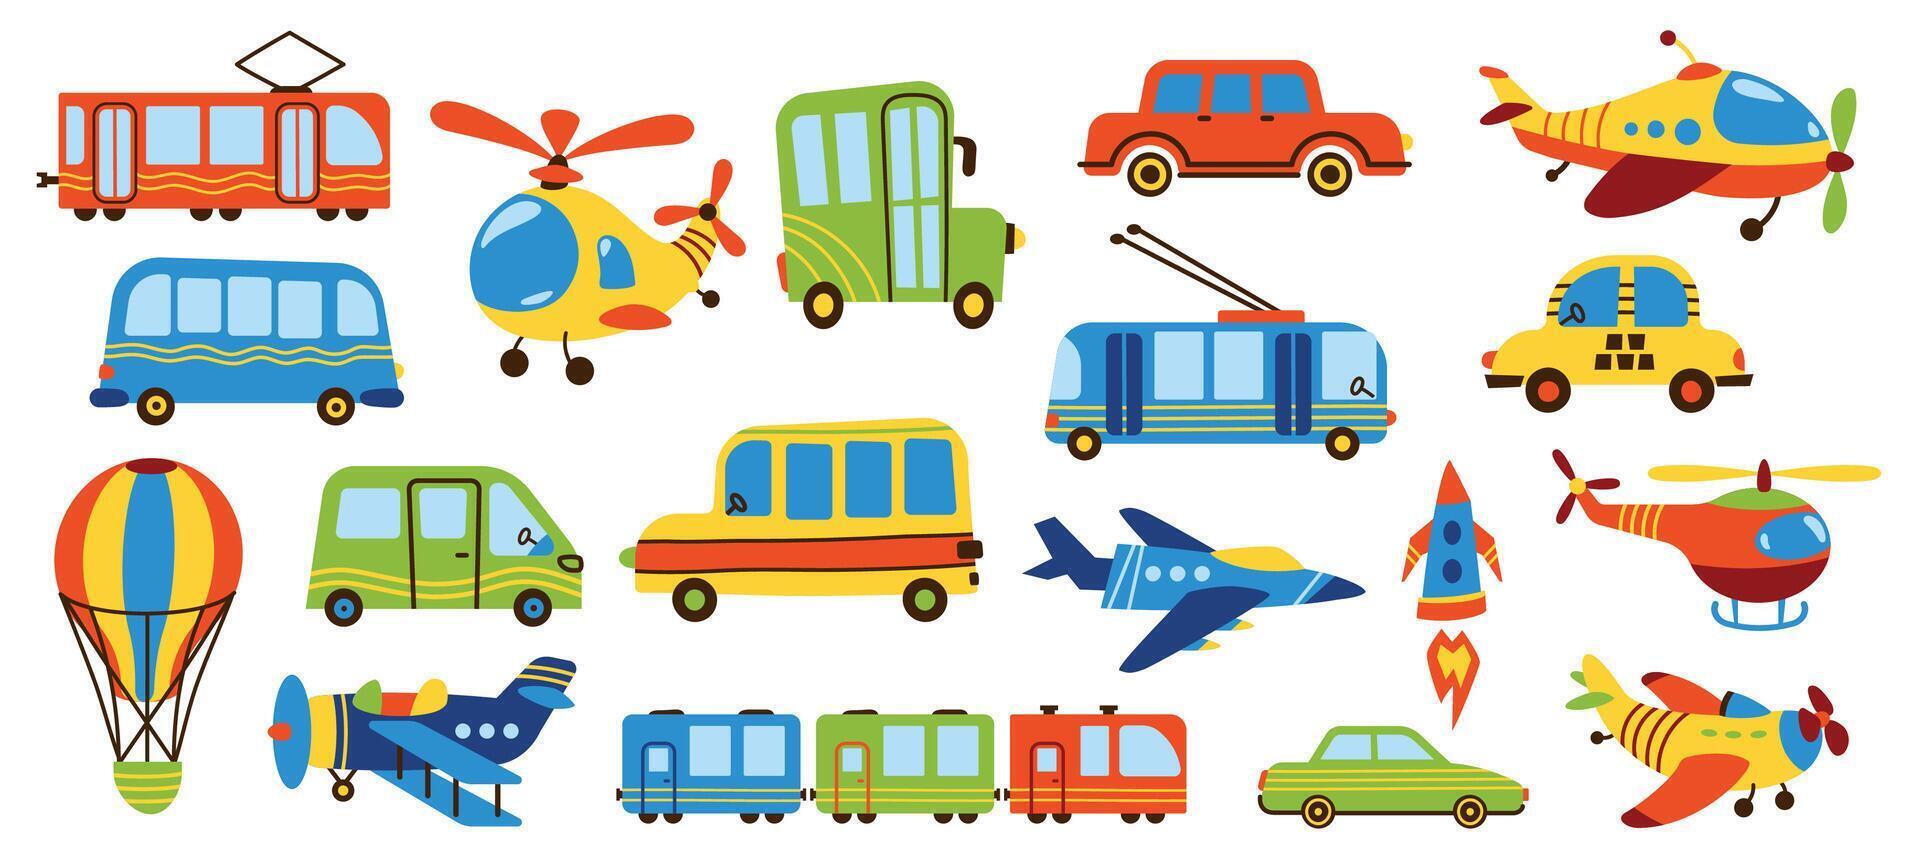 infantil transporte. linda dibujos animados tren Taxi coche avión dirigible caliente aire globo, conjunto de gracioso plano la carretera vehículo juguetes garabatear estilo. vector aislado colección